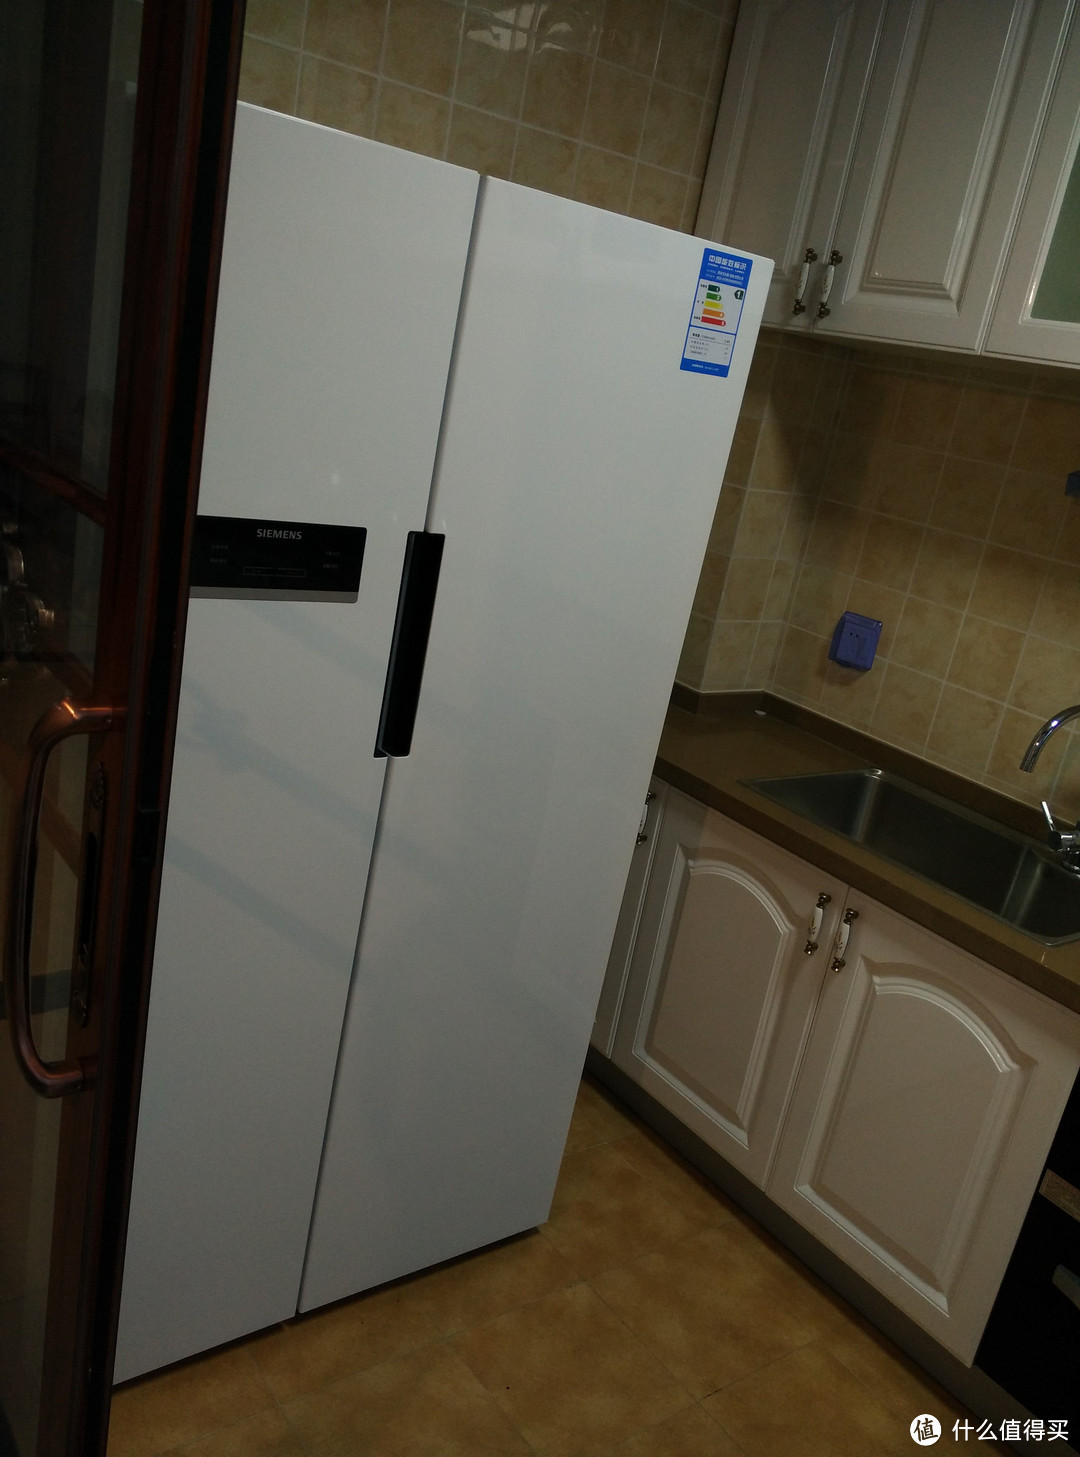 SIEMENS 西门子 KA92NV02TI 对开门冰箱入户及尺寸信息分享